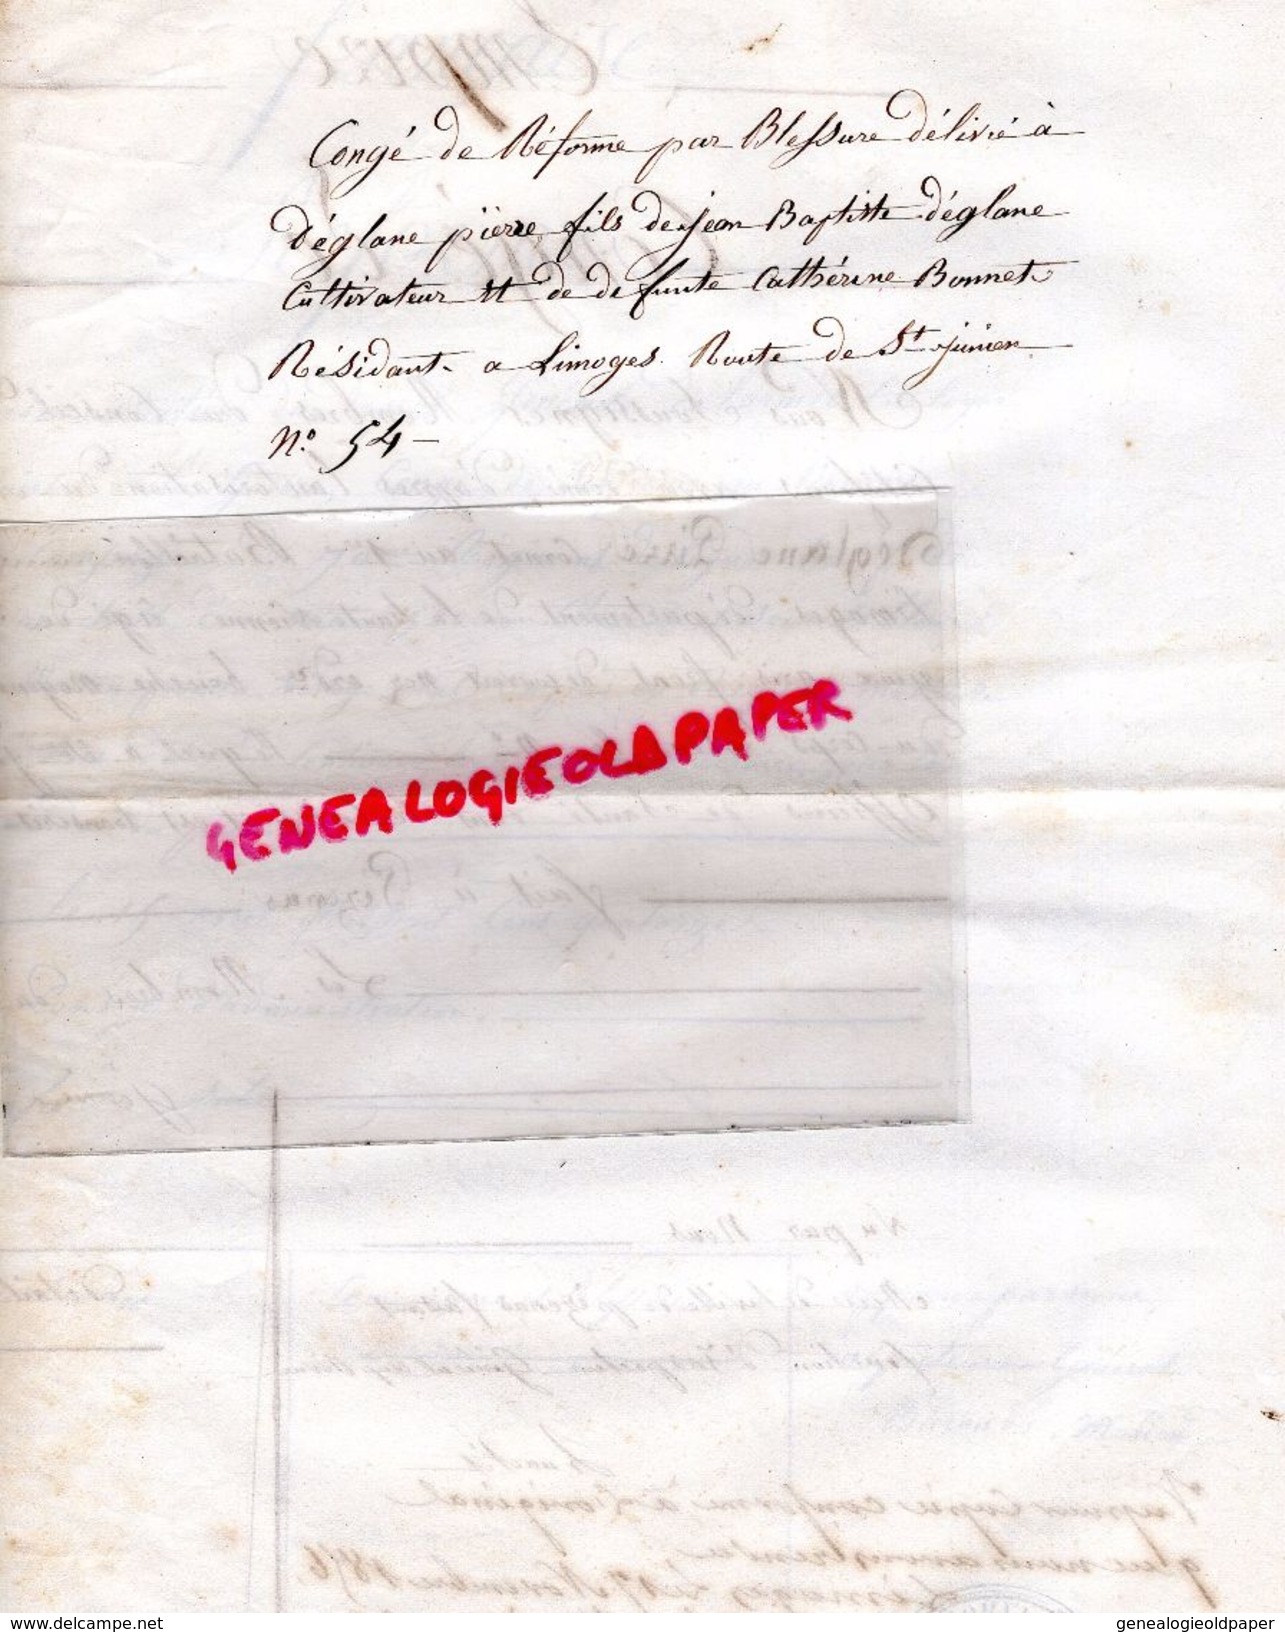 87-LIMOGES-LETTRE EMPIRE-CONGE REFORME PIERRE DEGLANE RTE ST JUNIEN-PEZENAS 1814-HOPITAL NARBONNE GENERAL BARON MULLER - Documents Historiques